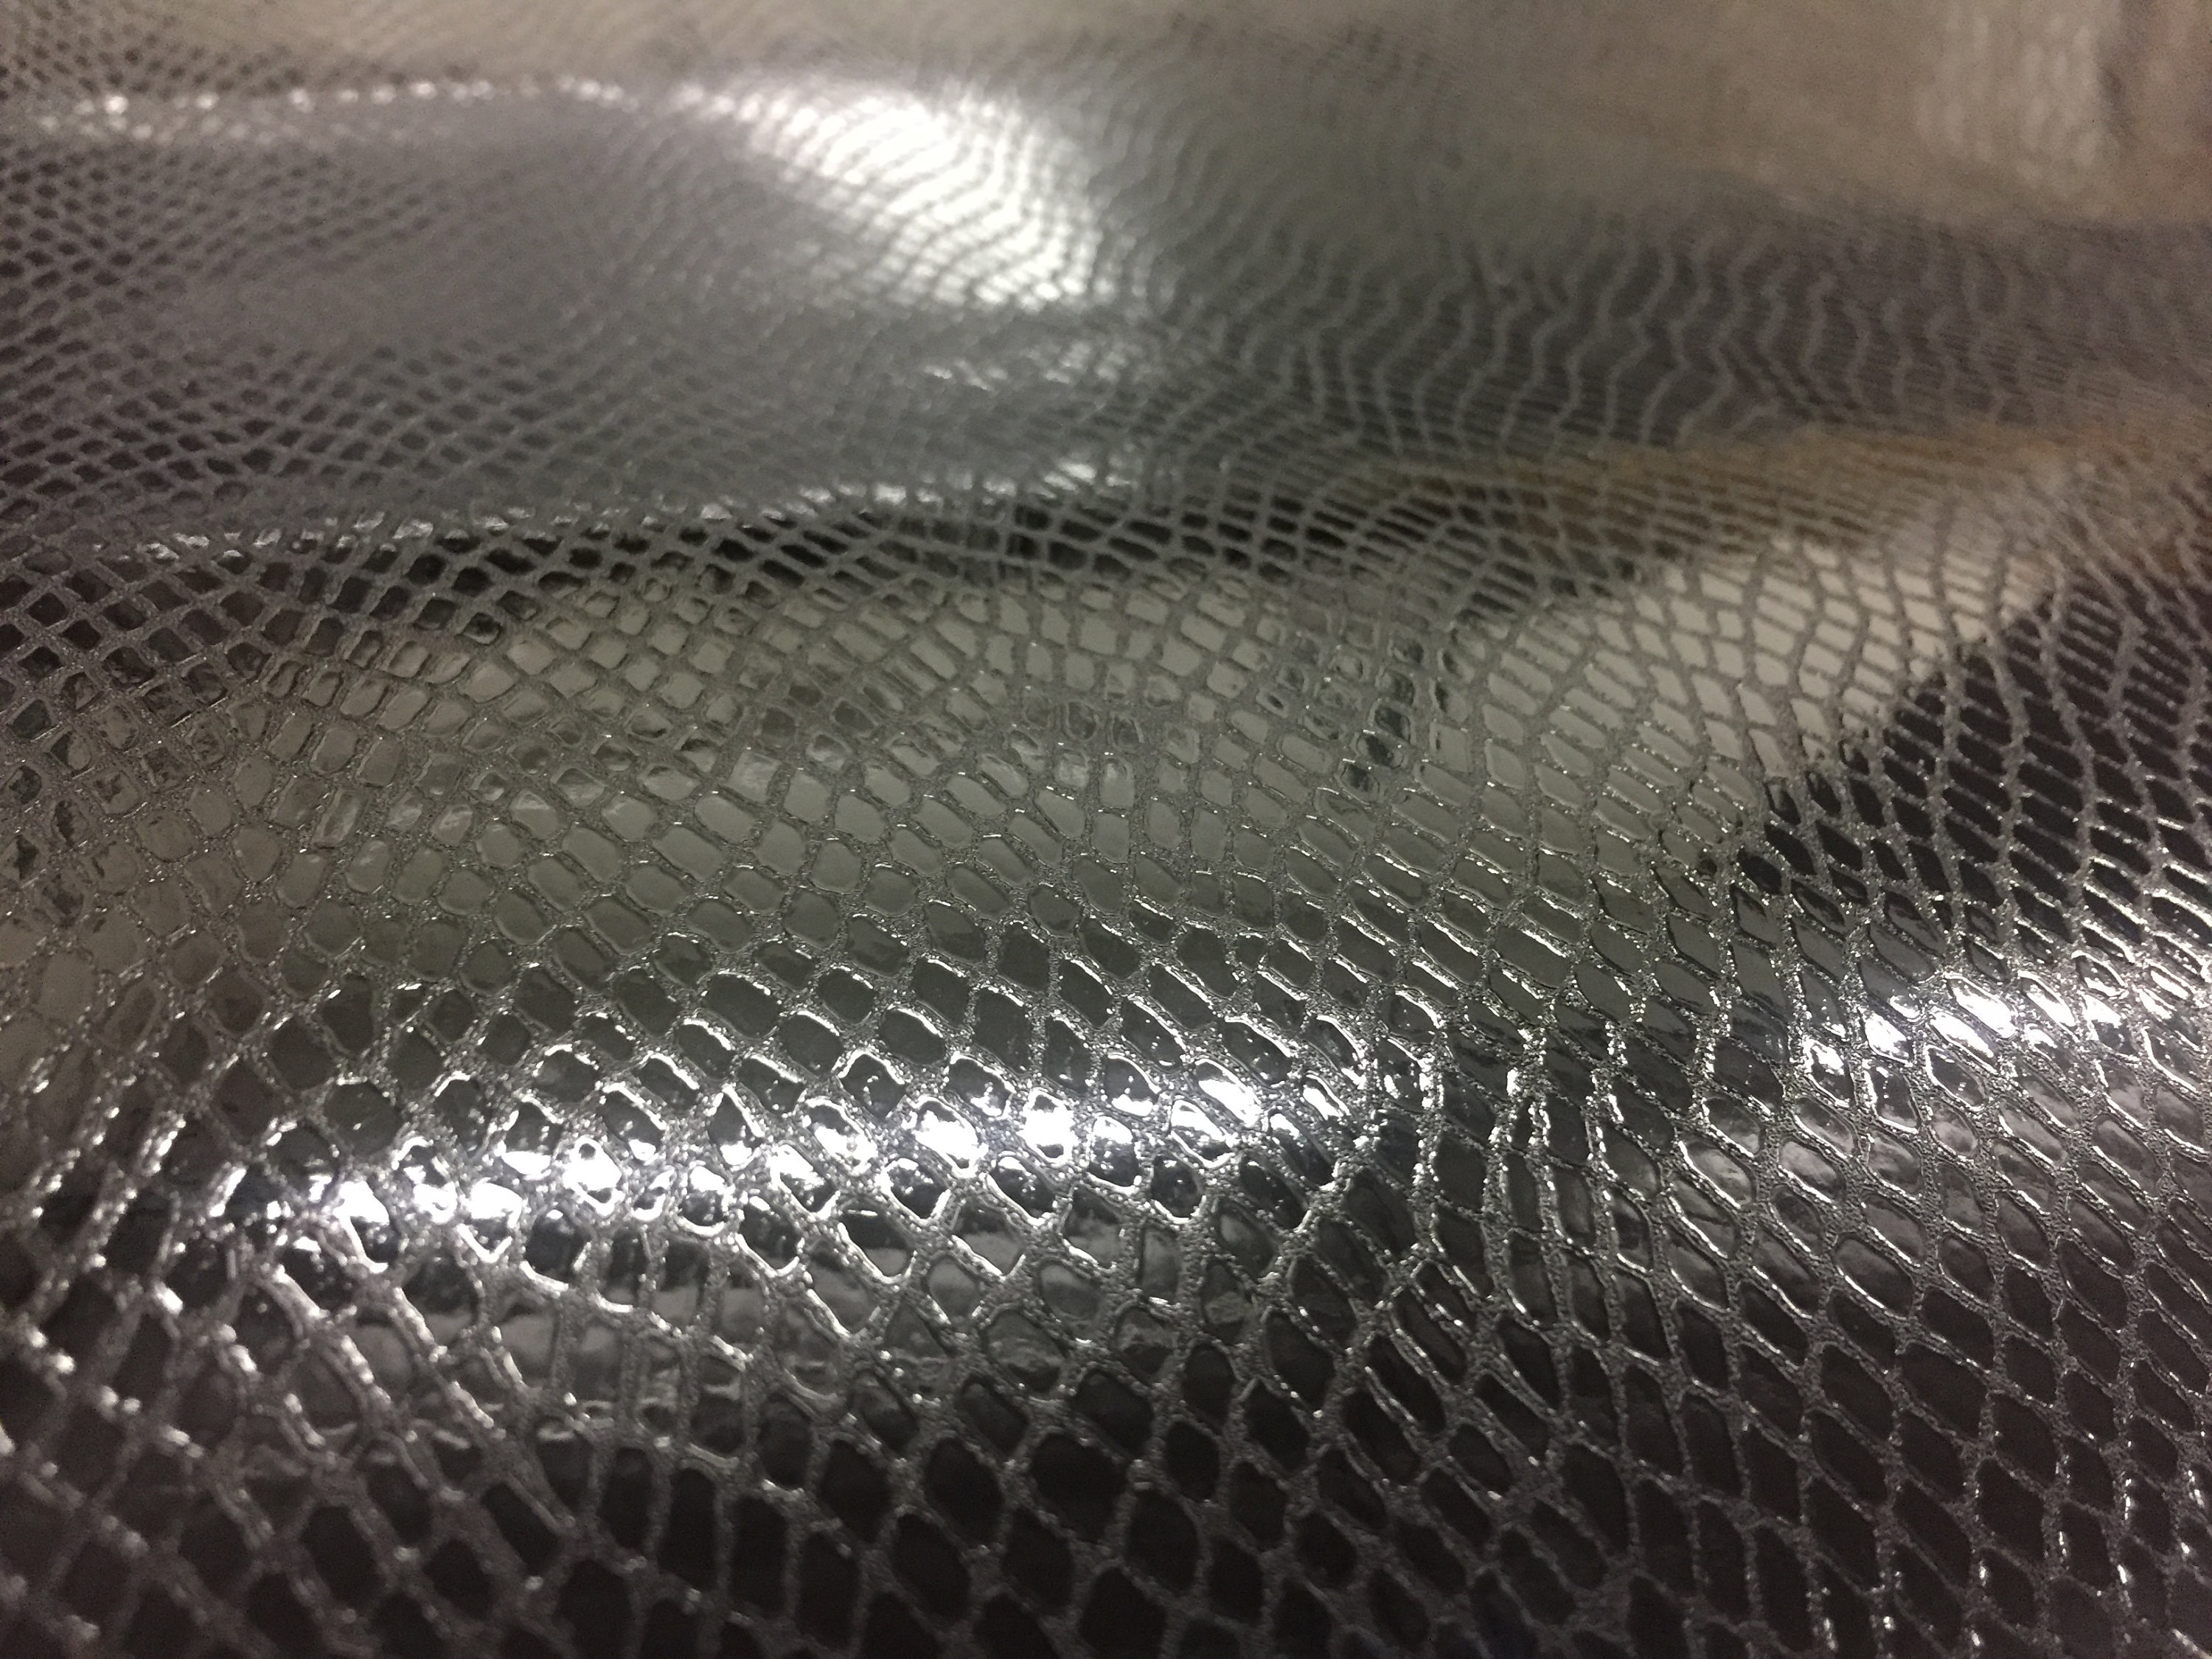 1 YD Stretchy Vegan Soft Leather Fabric 2 Way Stretch Print 1 Black  Crocodile Skin Texture 